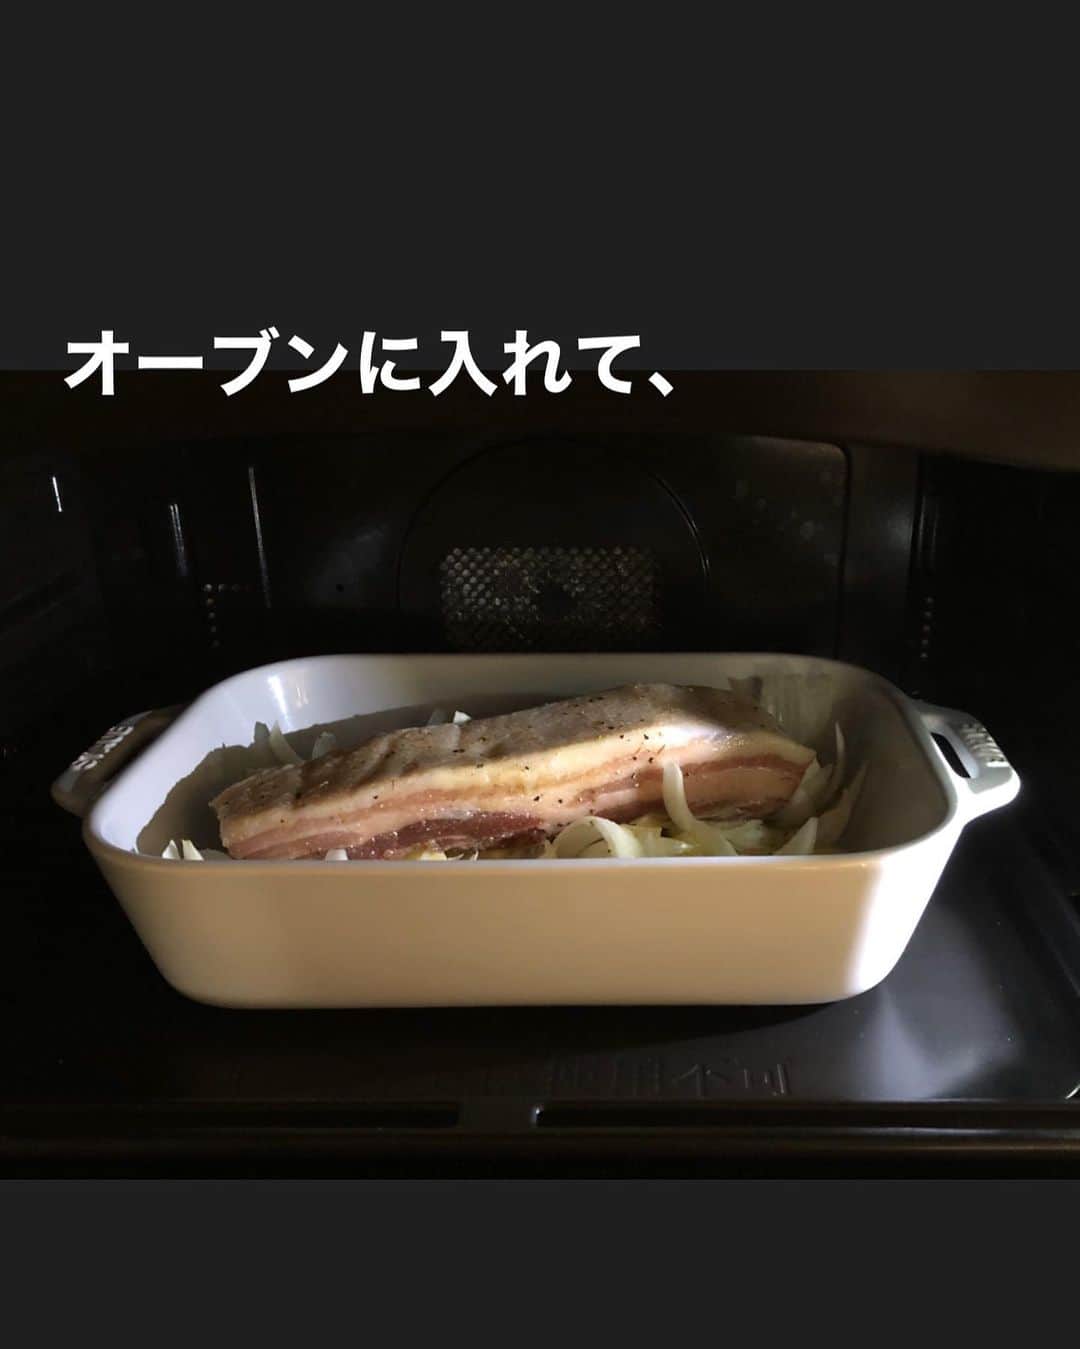 utoshさんのインスタグラム写真 - (utoshInstagram)「【レシピ付】豚バラの簡単ロースト・ポテト付き！﻿ ﻿ 料理家の脇雅代先生(@masayowaki )が発起人となってスタートした「#料理リレー」﻿ 参加させて頂きます。﻿ ﻿ このレシピは、妻に料理を作っていた事さえ気づかせなかったオーブンで作れるほっとくだけの簡単レシピです。﻿ ロースト作る時の定番作業として、肉の下に野菜を引くというのがあるんですが、﻿ これは下からの火入れを優しくして温度を均等にするためなんですが、この肉の下の野菜がうまいんですよ。﻿ ﻿ 火入れ目的だったら玉ねぎだけでもいいんですが、ぜひじゃがいもなど、いろんな野菜を置いて作ってみてください。﻿ ほくほくの野菜グリルになりますよ！﻿ ﻿ ﻿ 今回、僕にバトンを渡してくださったのは﻿ 料理研究家の岡本まどか先生（@lumias.pan）、エルグルメのイベントで何度もご一緒させて頂き、﻿ 今度一緒においしいコーヒー飲みに行きましょうという話がふわっとしたまま、いつか実現したいと思っている方です。﻿ ﻿ ﻿ ﻿ レシピはこちら↓﻿ ＿＿＿＿＿﻿ ﻿ 豚バラの簡単ロースト・ポテト付き（2人分）﻿ ﻿ 【材料】﻿ 豚バラかたまり肉 500g﻿ 玉ねぎ 1個﻿ ジャガイモ（大） 1個（小なら2個）﻿ ﻿ 塩　大さじ1弱くらい（肉の全面にまぶせる量）﻿ ローズマリーなど　適量﻿ （※ハーブソルトを使うのがオススメ）﻿ オリーブオイル 大さじ2 ﻿ A〈粒マスタードたれ〉﻿ 粒マスタード　大さじ1﻿ マヨネーズ　小さじ1﻿ オリーブオイル　大さじ1﻿ お酢（白ワインビネガー） 小さじ2﻿ 塩　少々﻿ ﻿ ﻿ 【作り方】﻿ （1）豚バラかたまり肉の全面に塩とハーブを塗りこむ（時間があるなら3時間冷蔵庫にいれて置いておく。時間がなければ置かなくてもOK）。玉ねぎは食べやすい大きさにくし切りにする。ジャガイモも食べやすい大きさに切る（皮はお好みで剥いてください）。Aは混ぜておく。﻿ ﻿ （2）大きめの耐熱皿に玉ねぎとジャガイモを引いて、オリーブオイルをかけて、塩少々。その上に肉を乗せ、200°のオーブンで45分加熱する。（玉ねぎは焦げる部分があるので、そういうのは取り除く）﻿ ﻿ （3）取り出して肉を7mmくらいの幅に切り、お皿に盛りつけたらAをかけて完成。﻿ ＿＿＿＿＿﻿ ﻿ ﻿ ぜひ作ってみてくださいね。﻿ No local No food おいしく楽しく！﻿ ﻿ ﻿ そして僕のバトンを引き継いてくれるのは﻿ 「激悪飯」でおなじみのぐっちくん　(@gucci.tckb)﻿ ﻿ ﻿ #うちで過ごそう #stayhome #料理リレー #cookingrelay﻿ #脇雅世加藤巴里きじまゆうた杵島直美今泉久美塩田ノア金子文恵宇田川多眞希大友まりこ尾田衣子小野孝予岡本まどか植木俊裕﻿ ﻿ #ややはつレシピ #とりあえず野菜食﻿ #ellegourmet#lunch#brunch#breakfast#foodporn#instagramjapan#vsco#IGersJP#onthetable#ランチ#おうちカフェ#うちごはん#暮らし#フーディーテーブル﻿ #cooking#homemade#おうちごはん#朝ごはん#japanesebreakfast#f52grams」4月20日 22時30分 - utosh